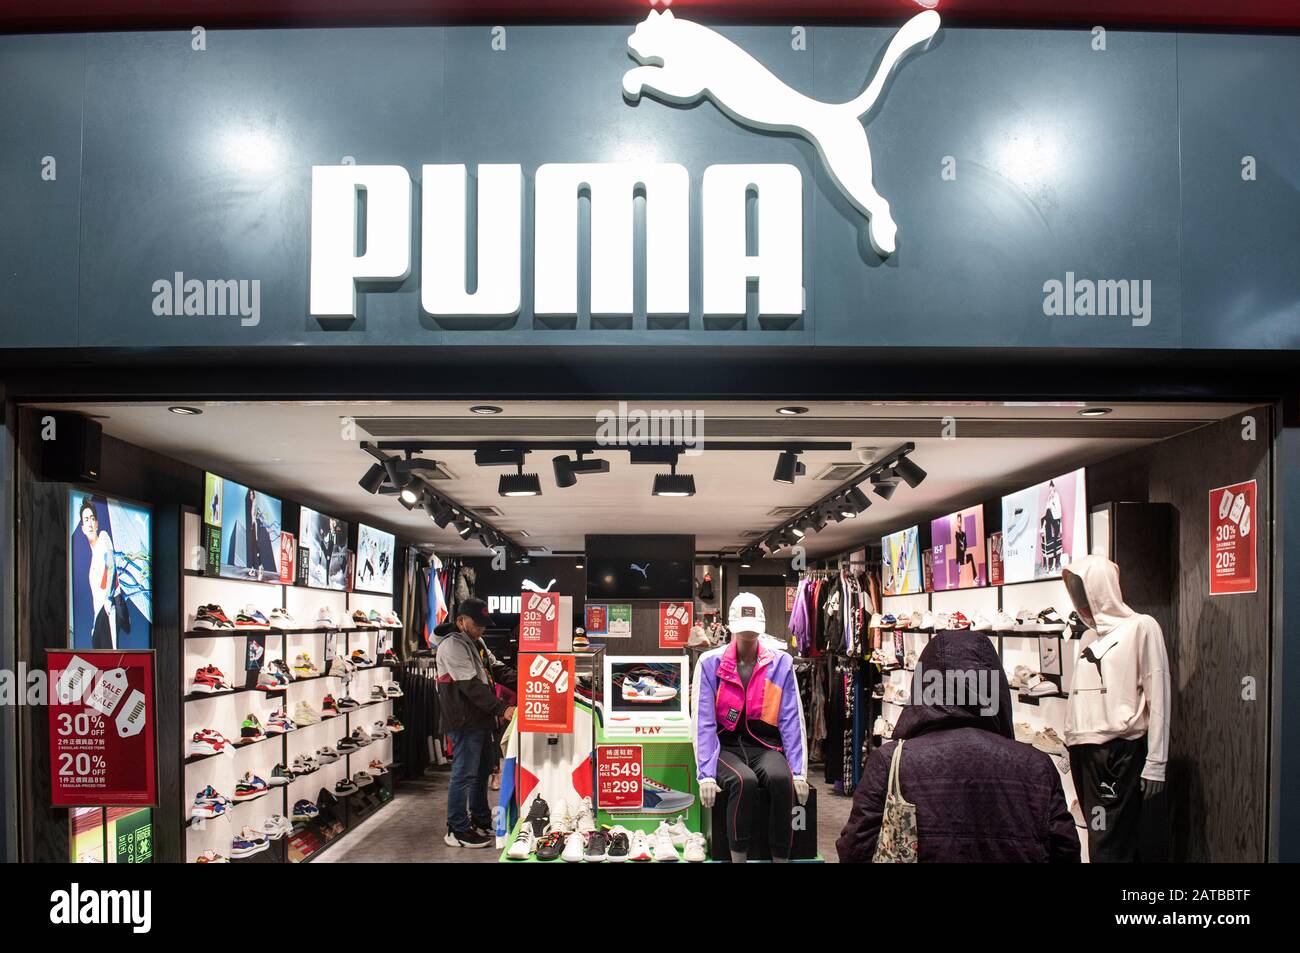 Puma store immagini e fotografie stock ad alta risoluzione - Alamy